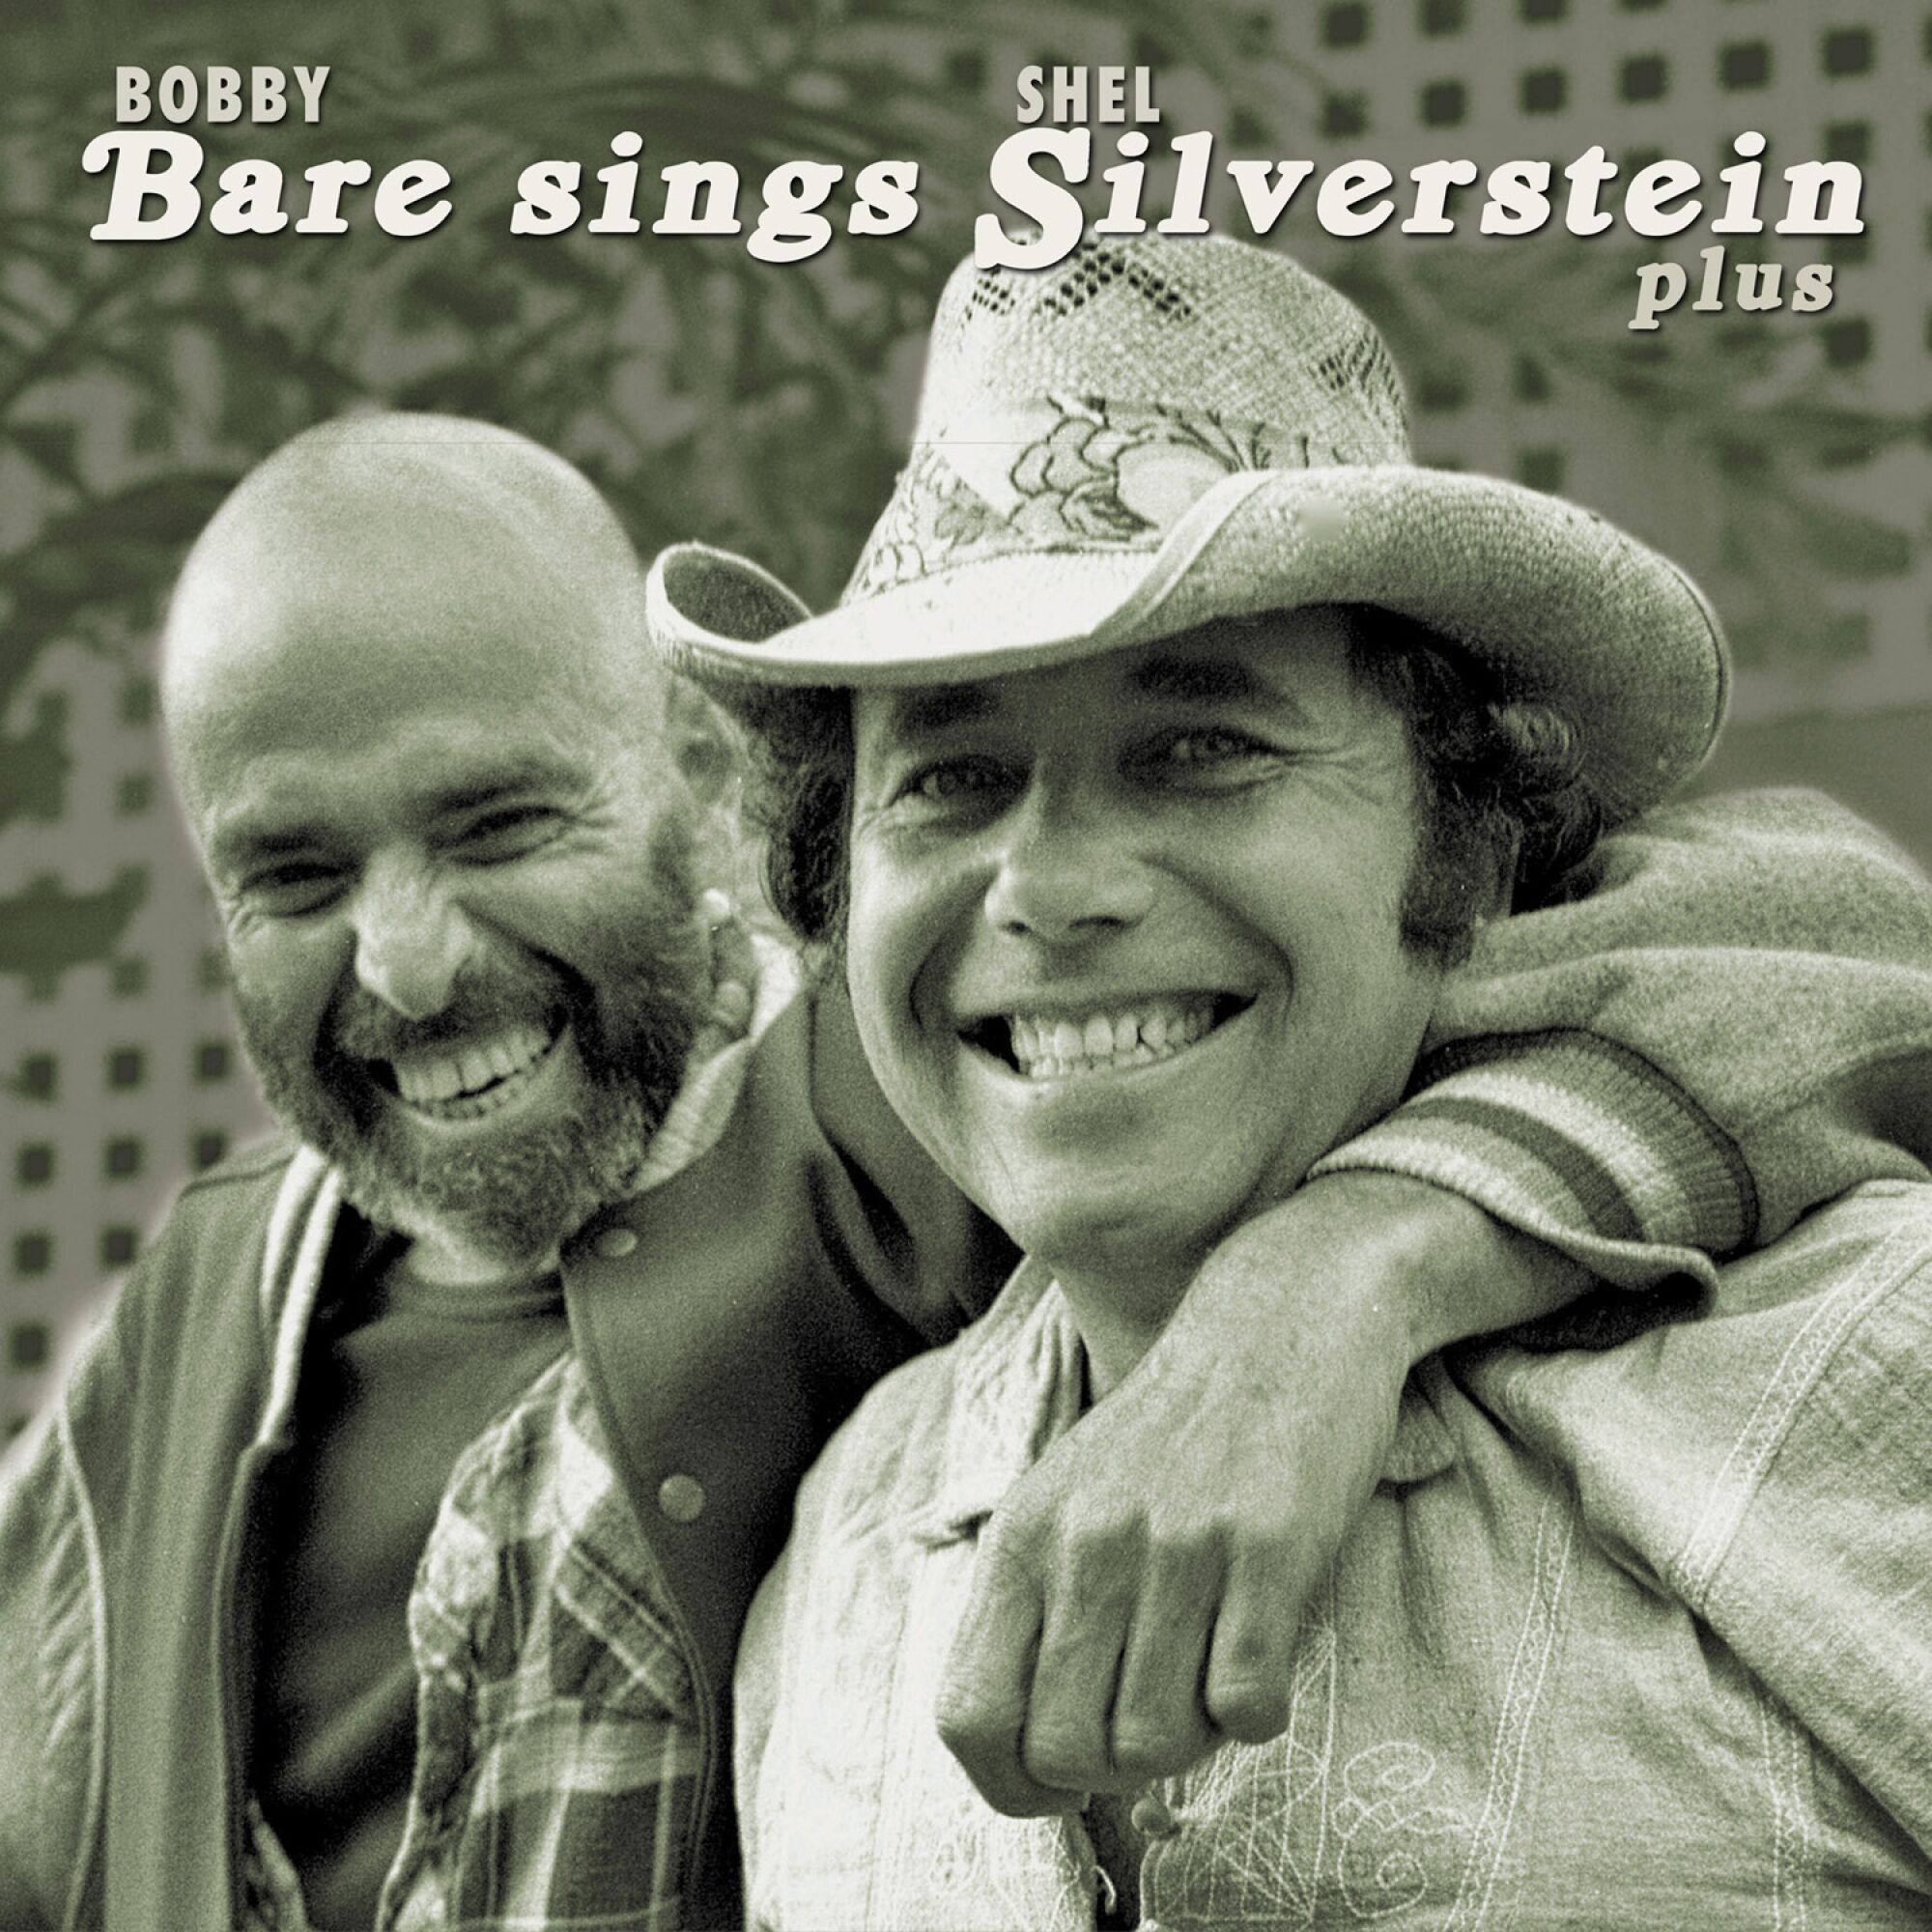 Bobby Bare, "Bobby Bare Sings Shel Silverstein Plus." 